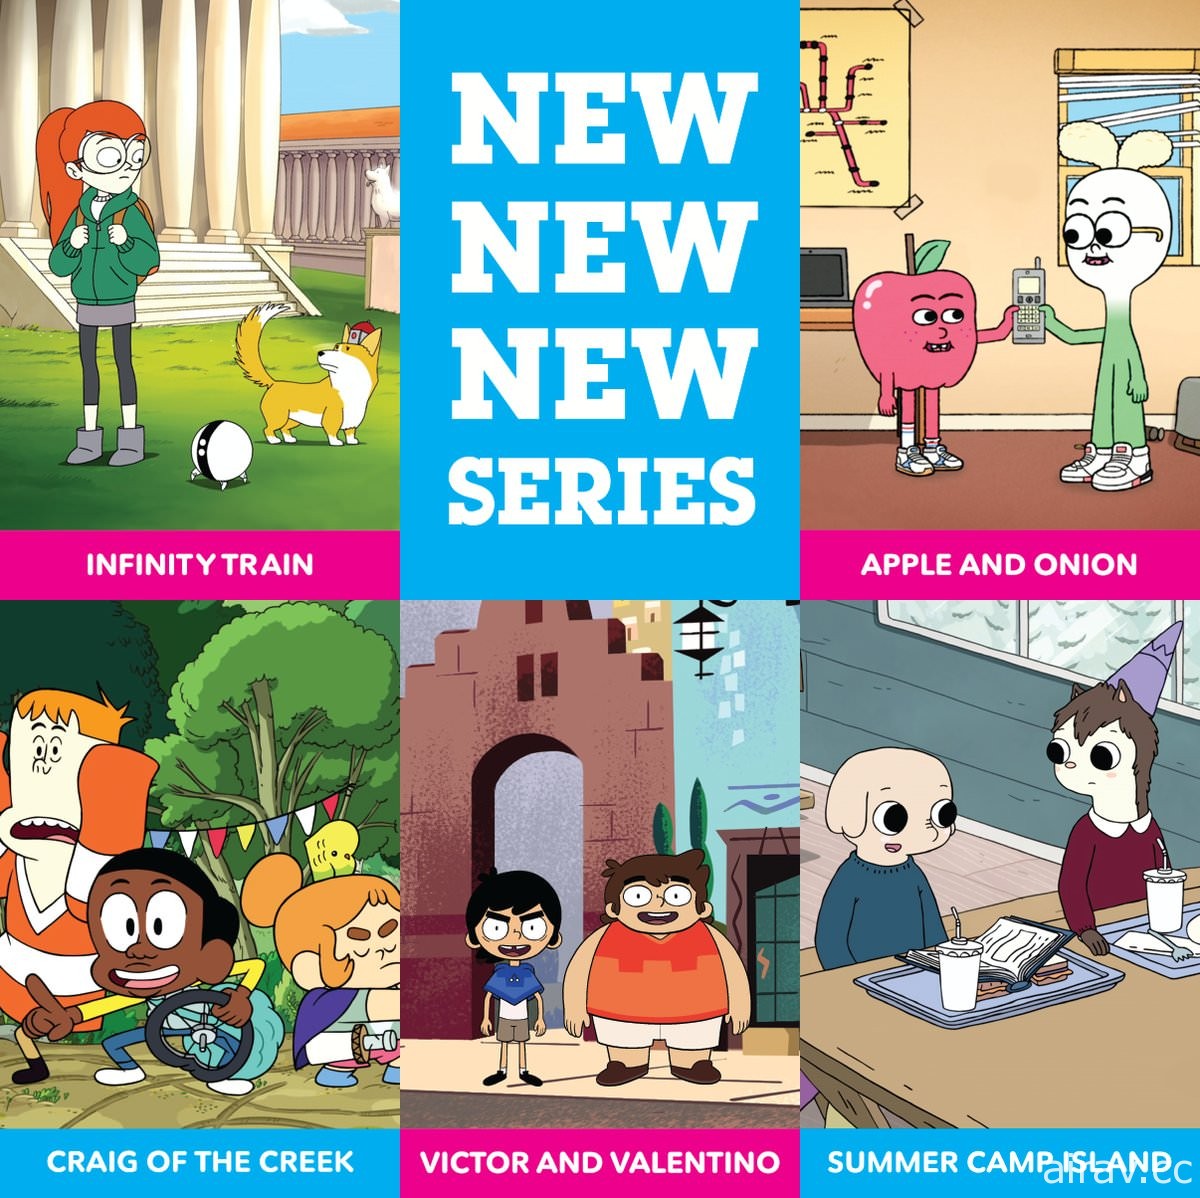 美國卡通頻道公布 2018 年到 2019 年動畫節目